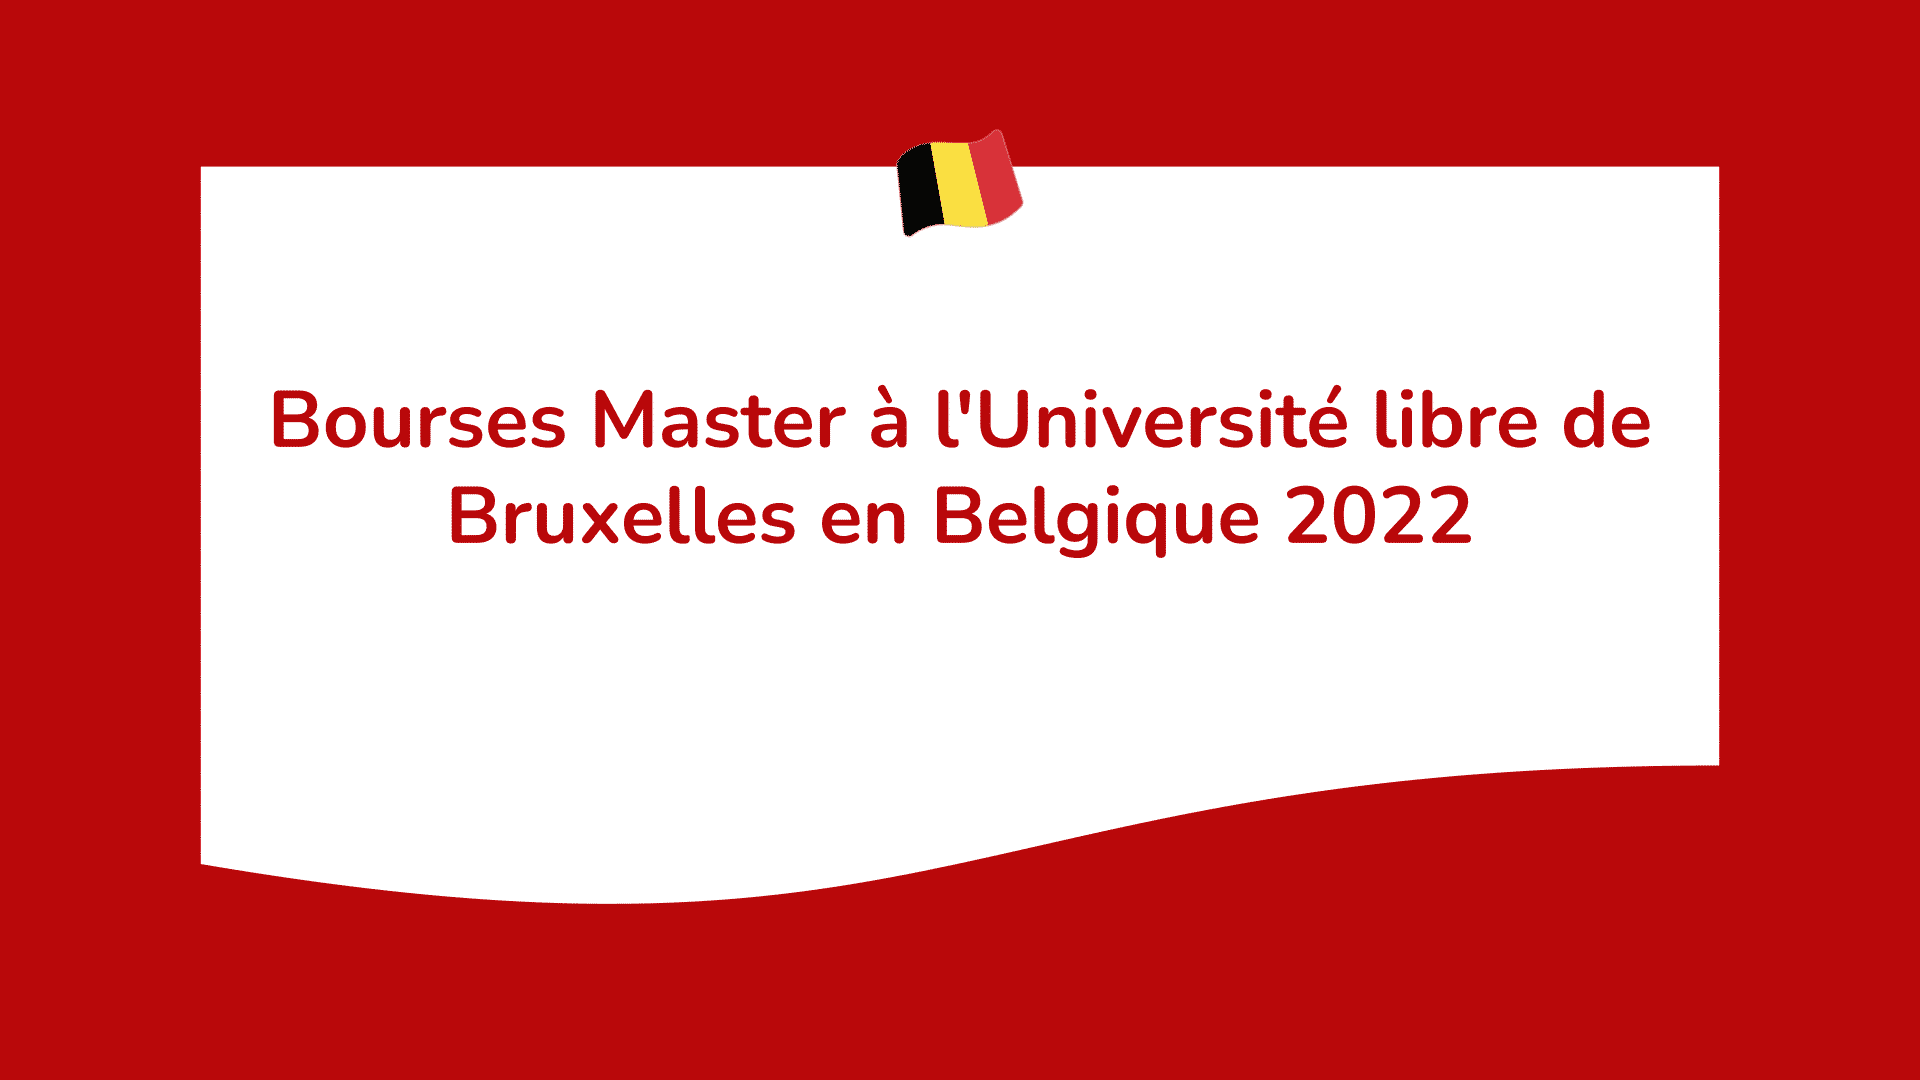 Bourses Master à l'Université libre de Bruxelles